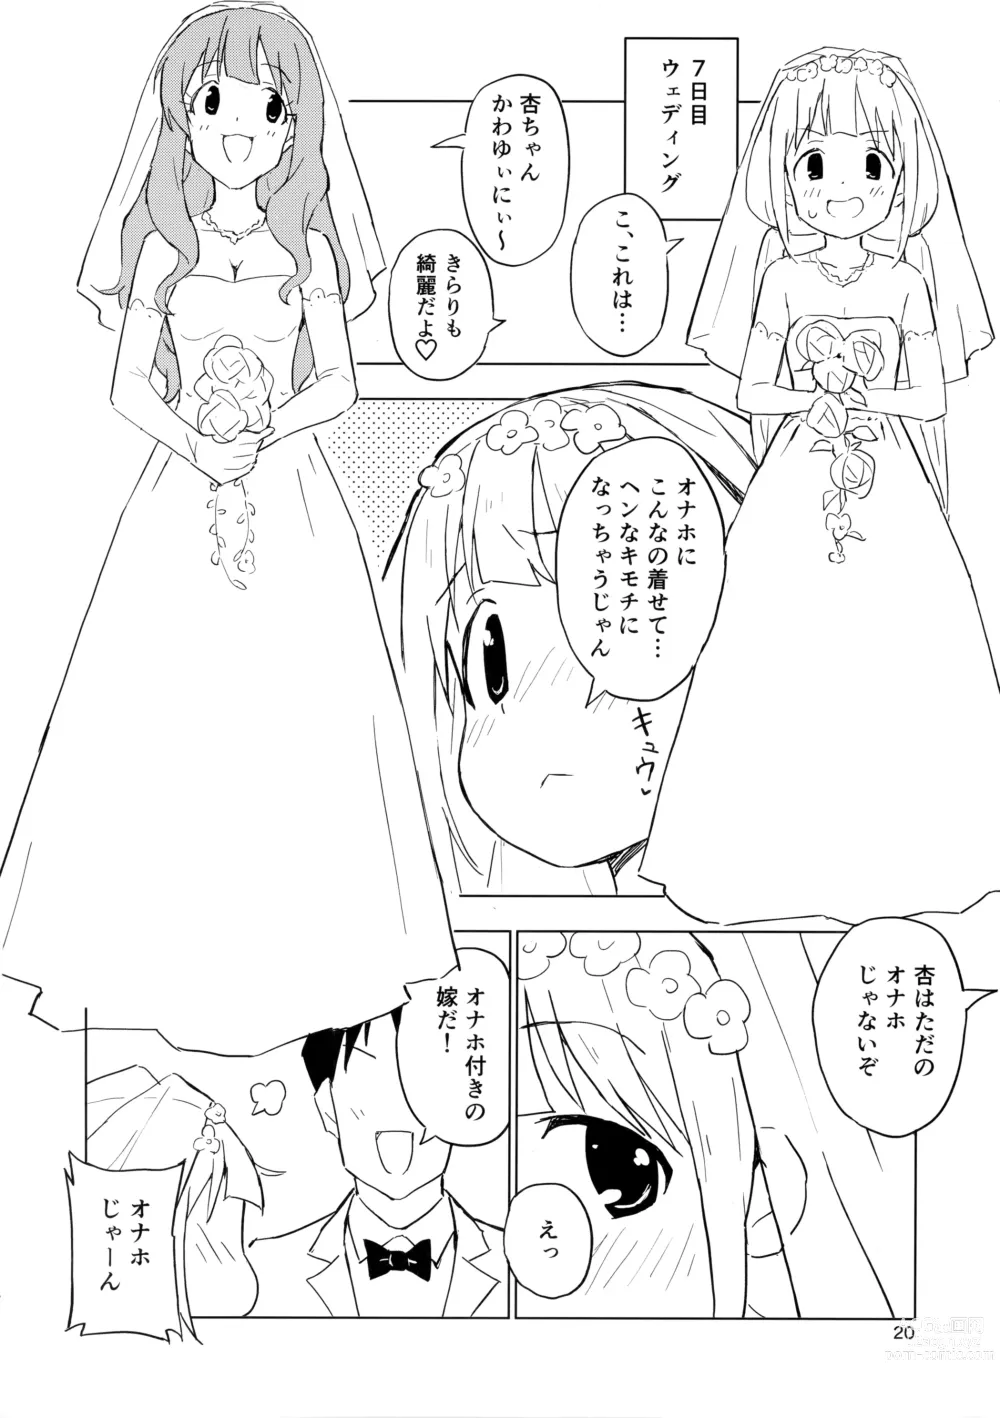 Page 19 of doujinshi AnKira Ura Satsueikai Cosplay Hametori 7-renkin!